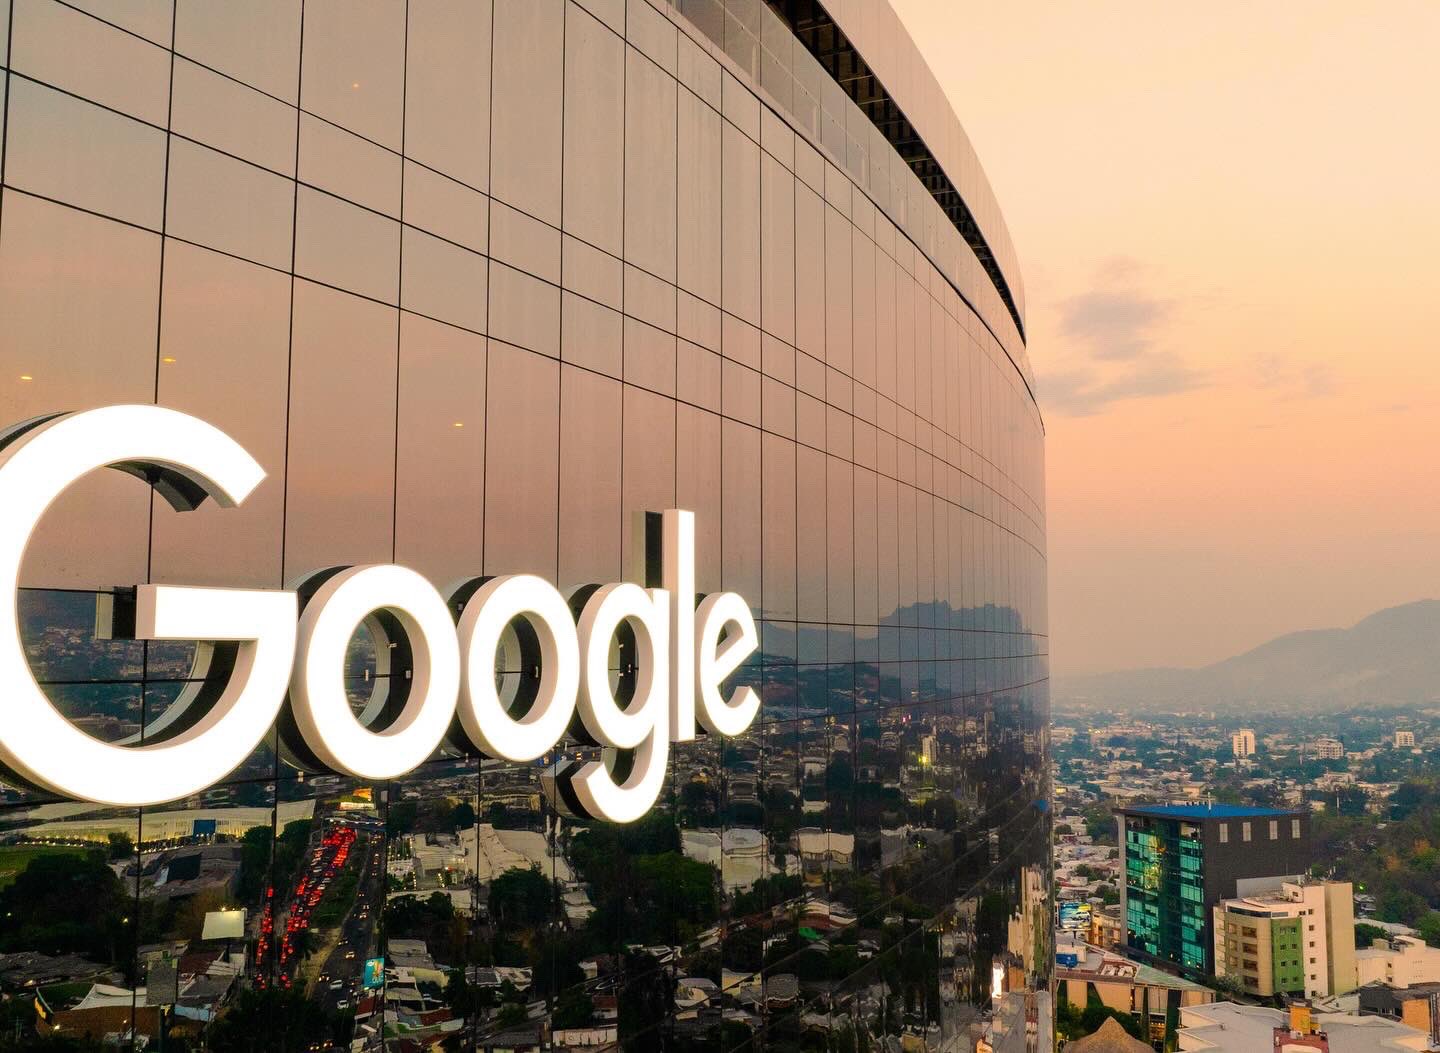 Google abre sus oficinas en El Salvador